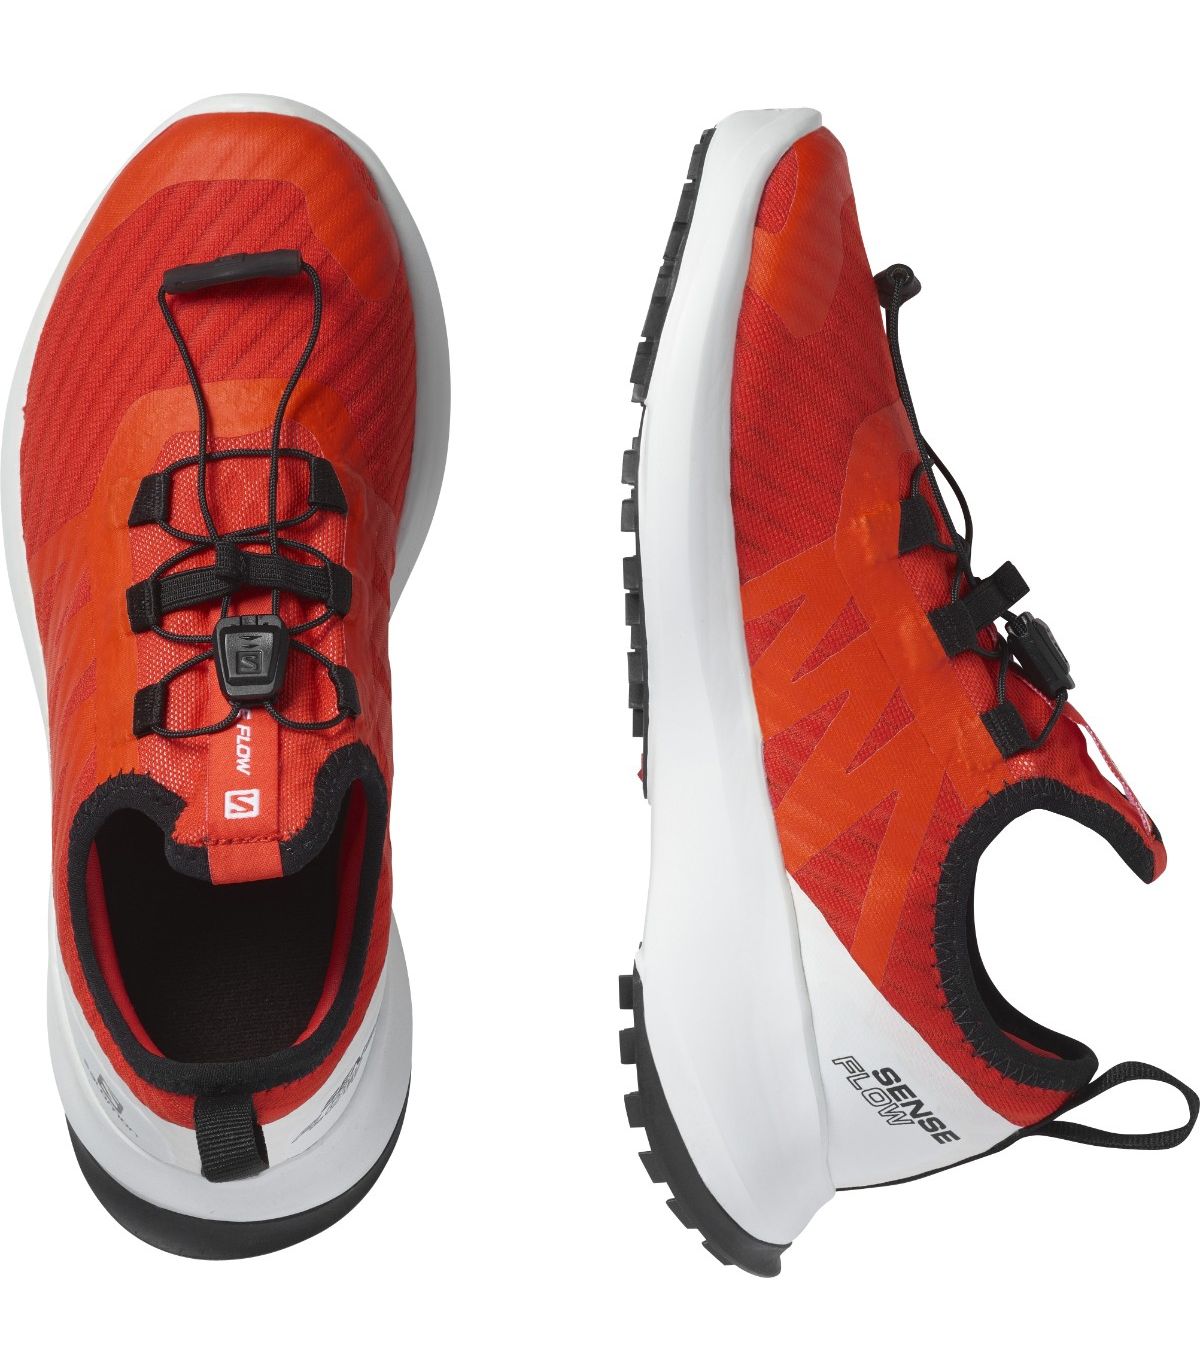 Zapatillas de Trail Running para niño y niña, calzado ligero